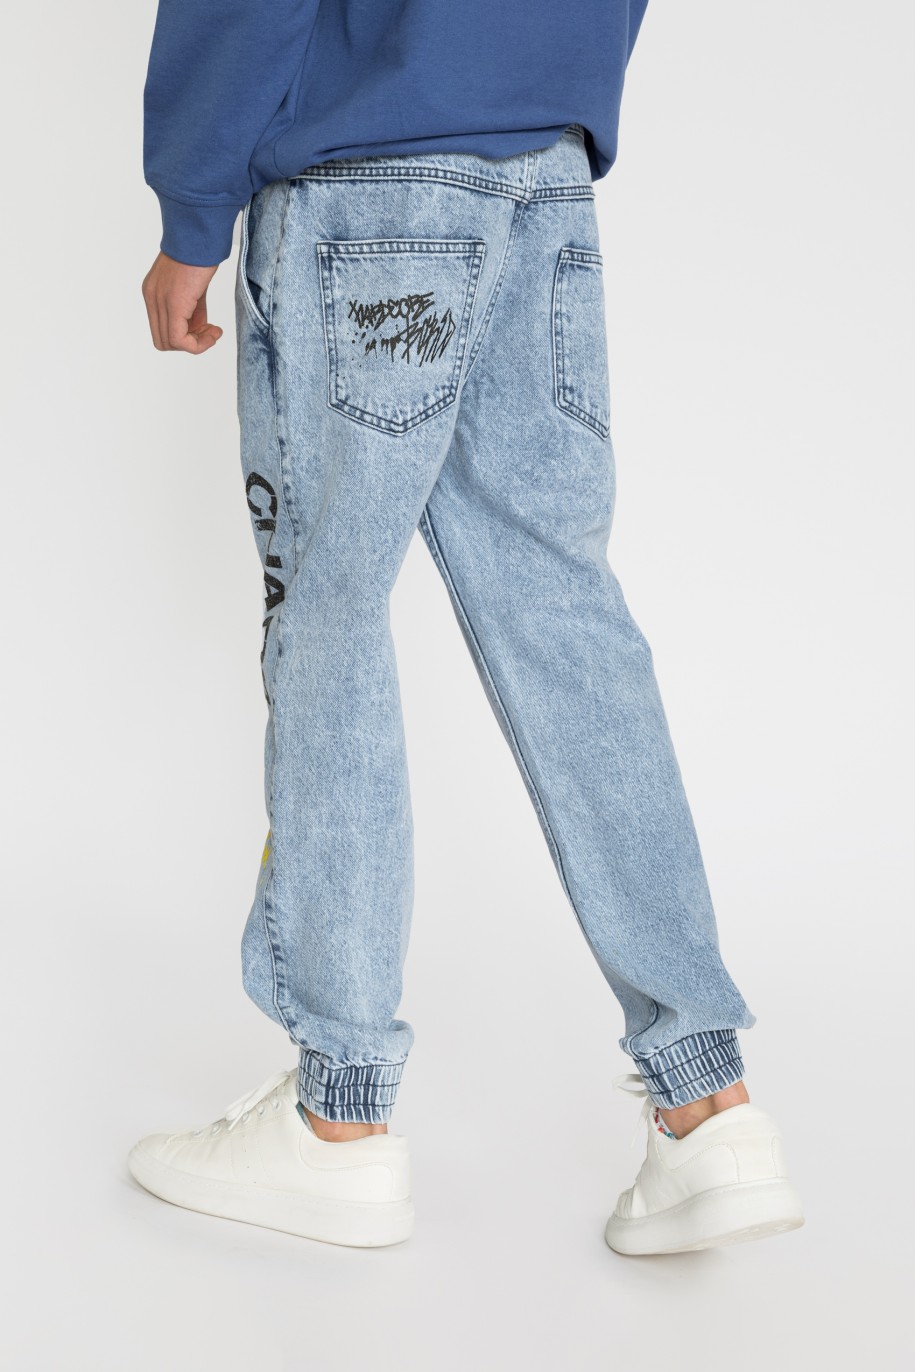 Niebieskie jeansy typu jogger z nadrukami dla chłopaka - 33455